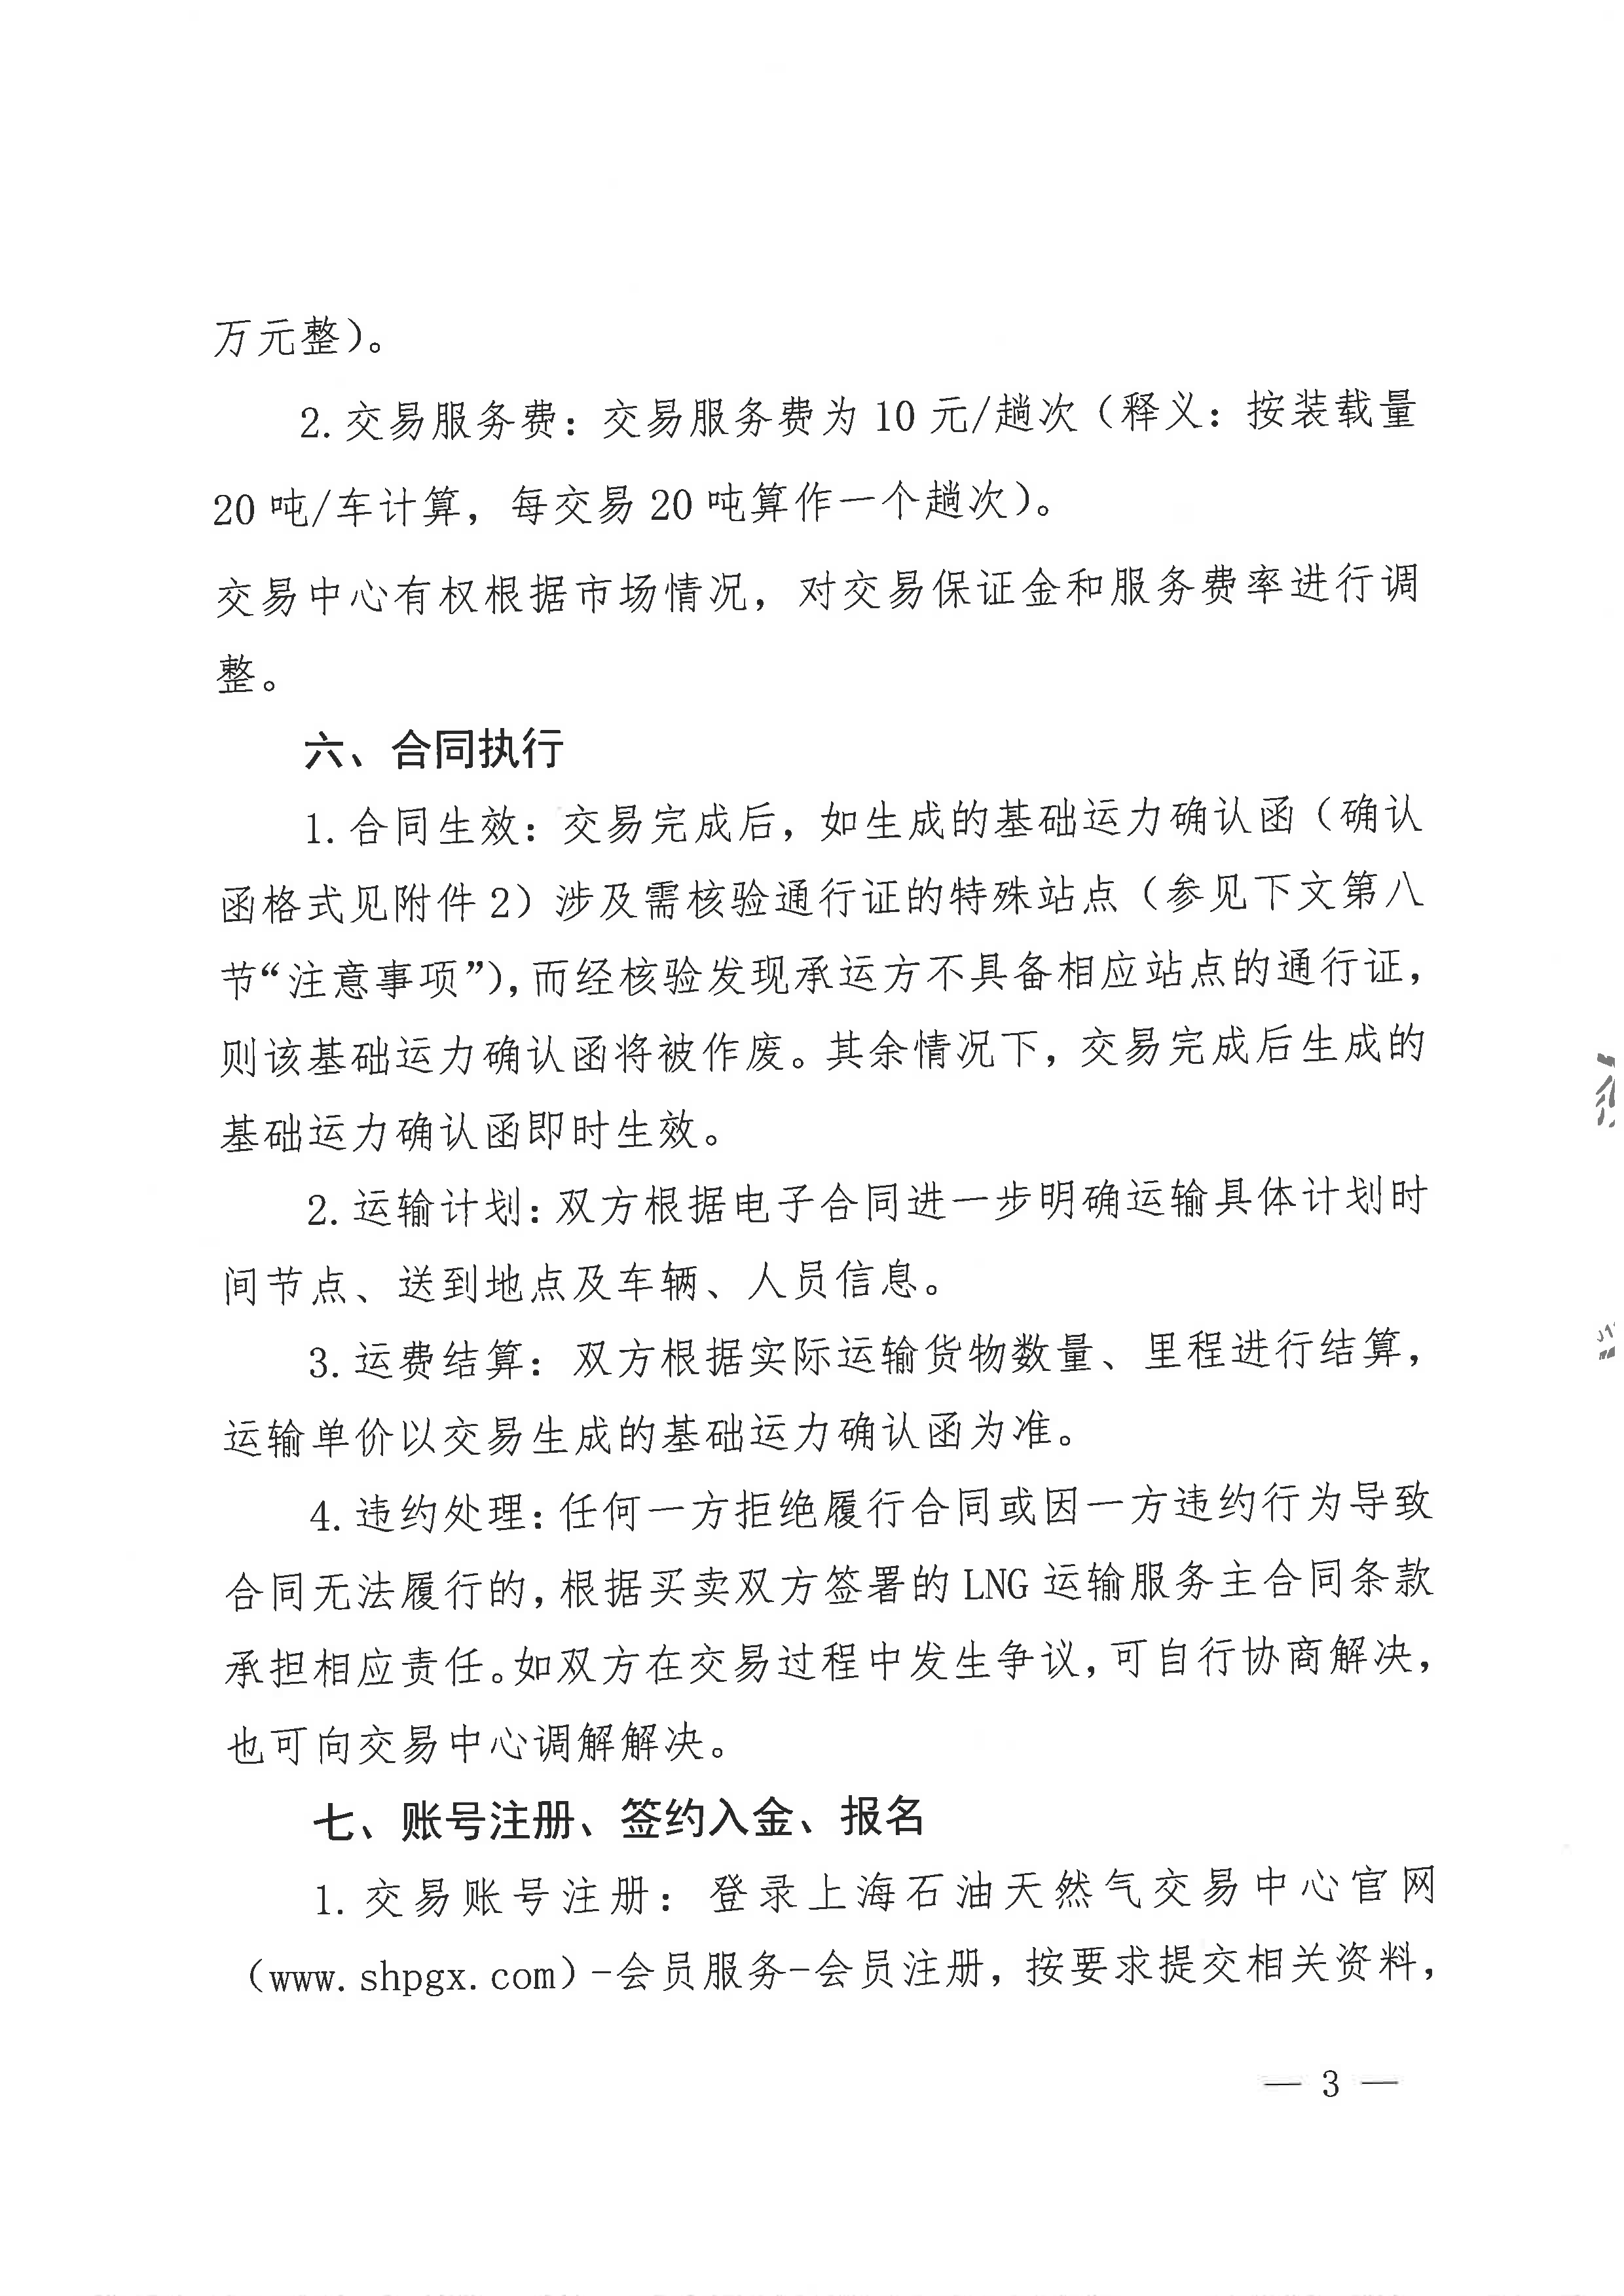 中海石油气电集团浙江分公司关于开展运力竞价交易的公告_页面_3.png